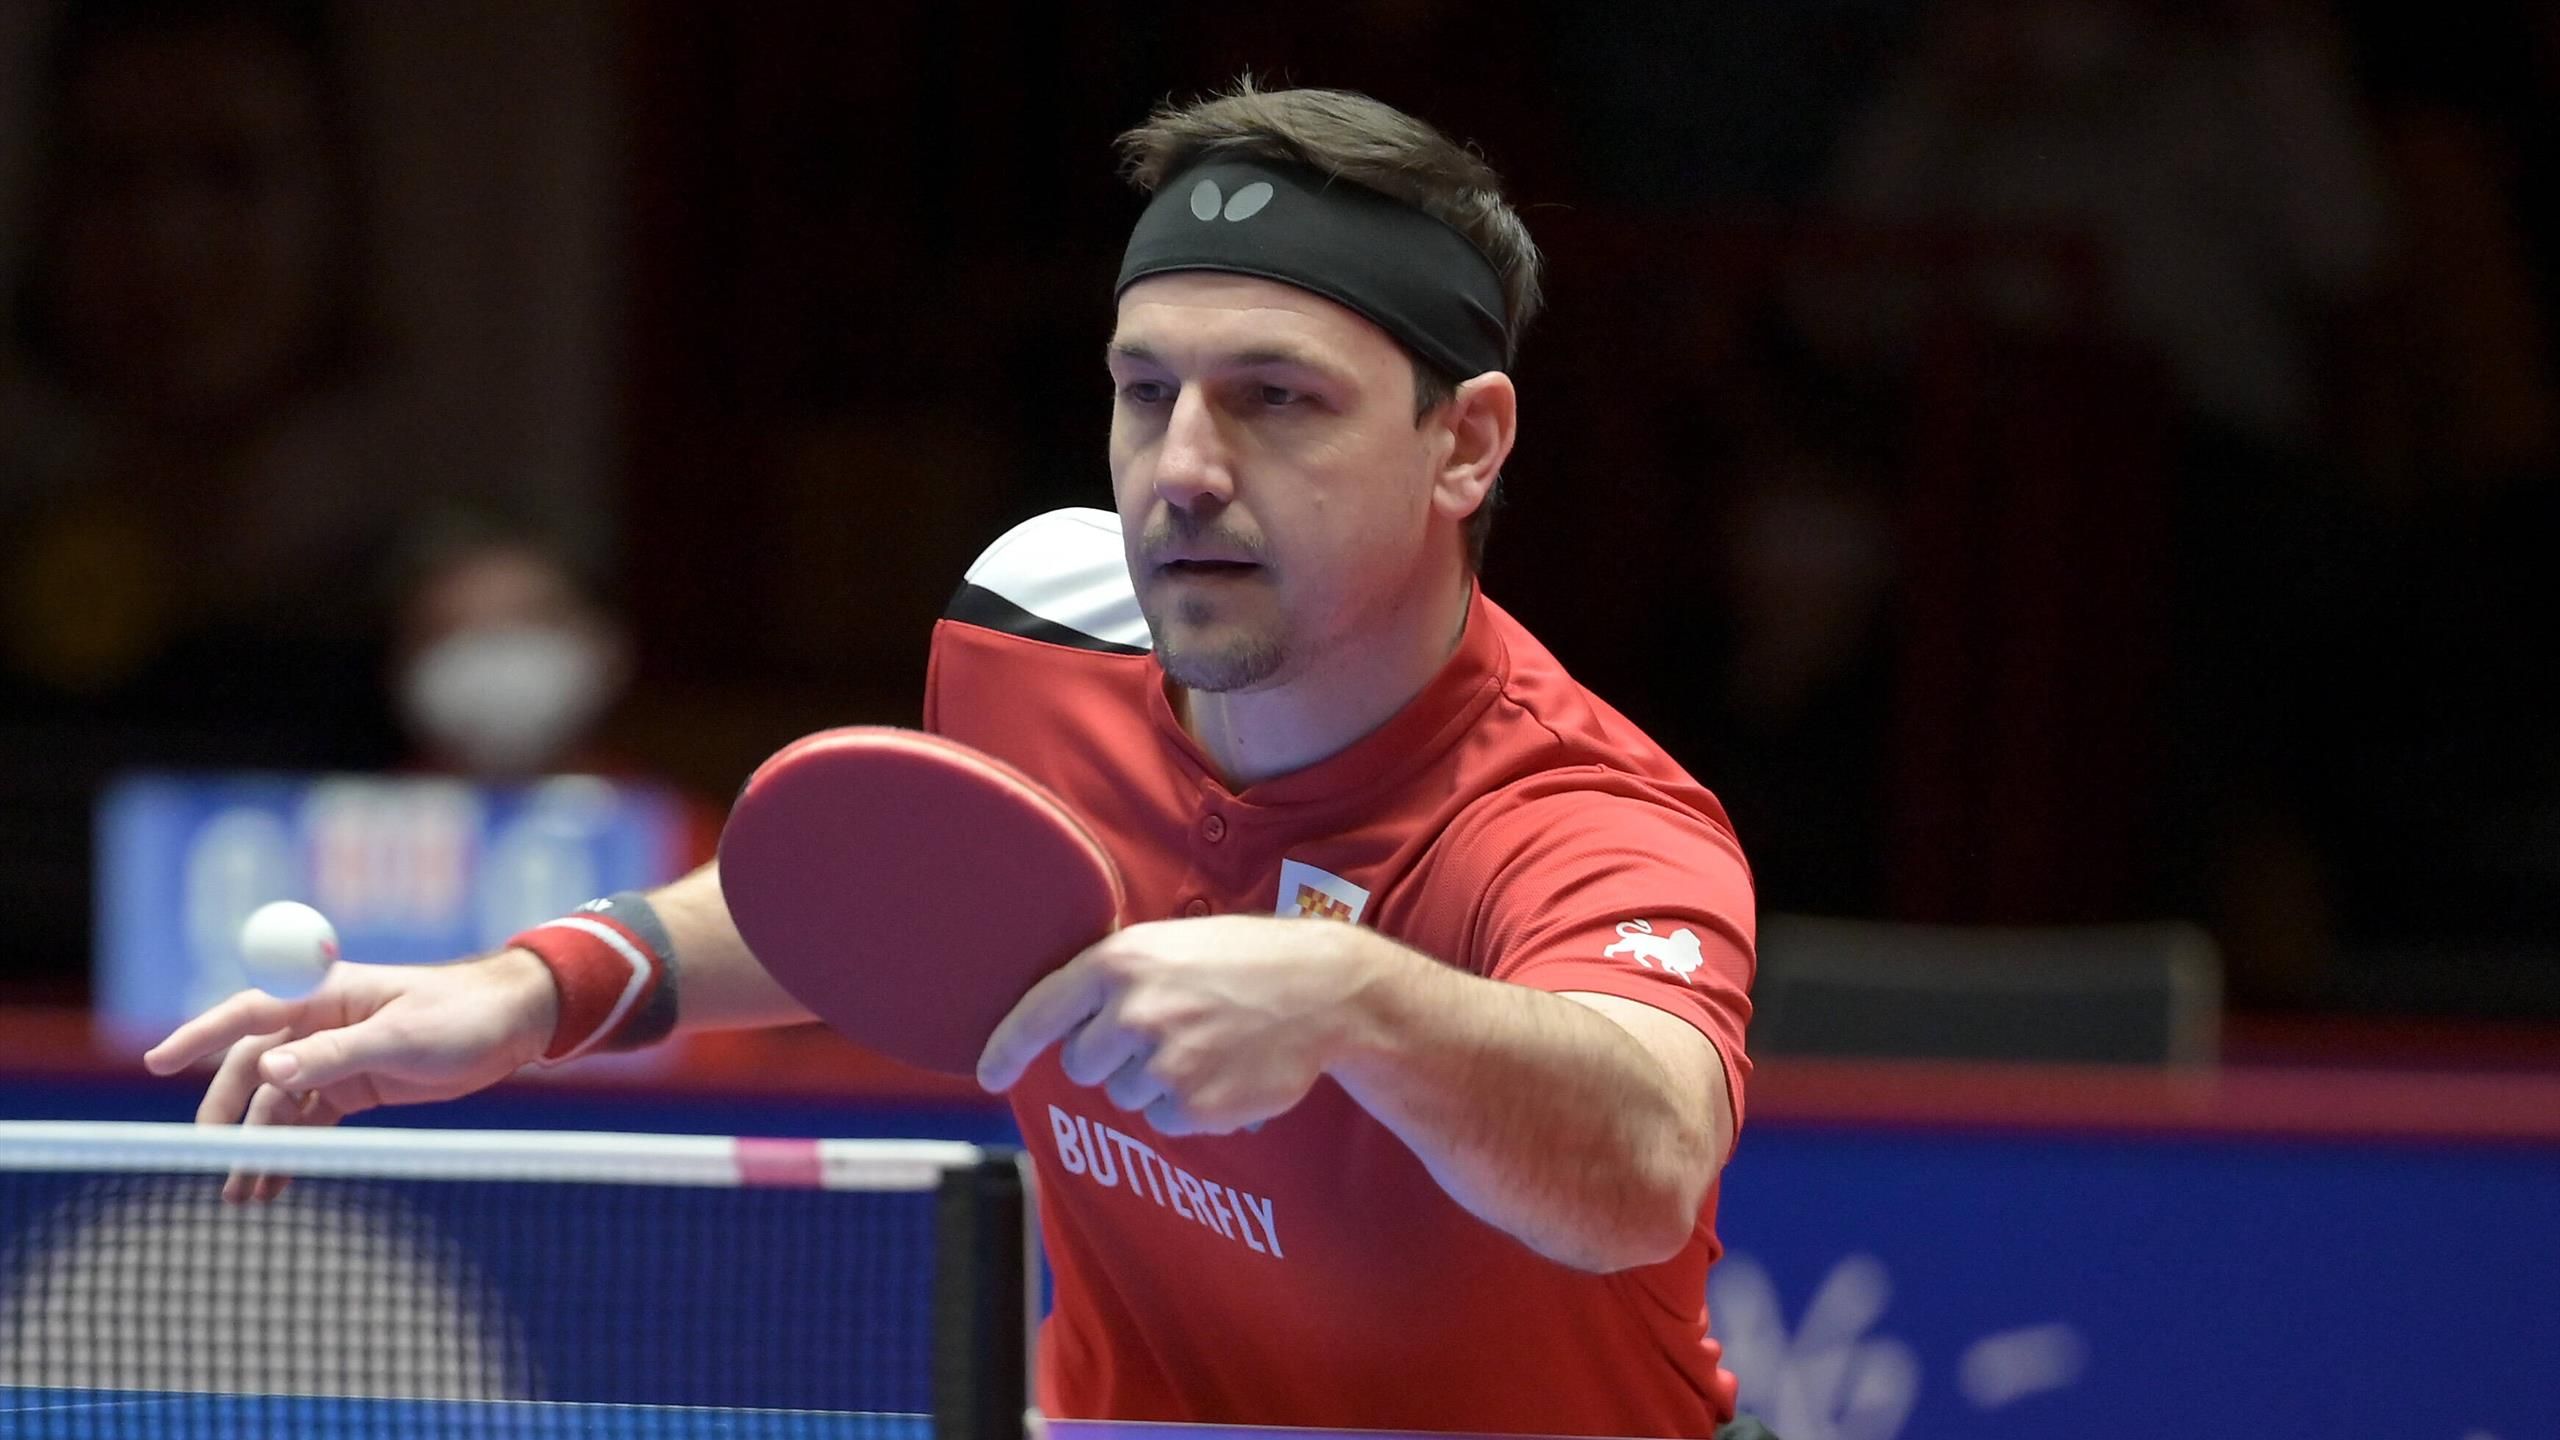 Tischtennis-Champions-League Düsseldorf und Timo Boll nach Russen-Klage als Sieger abgesetzt